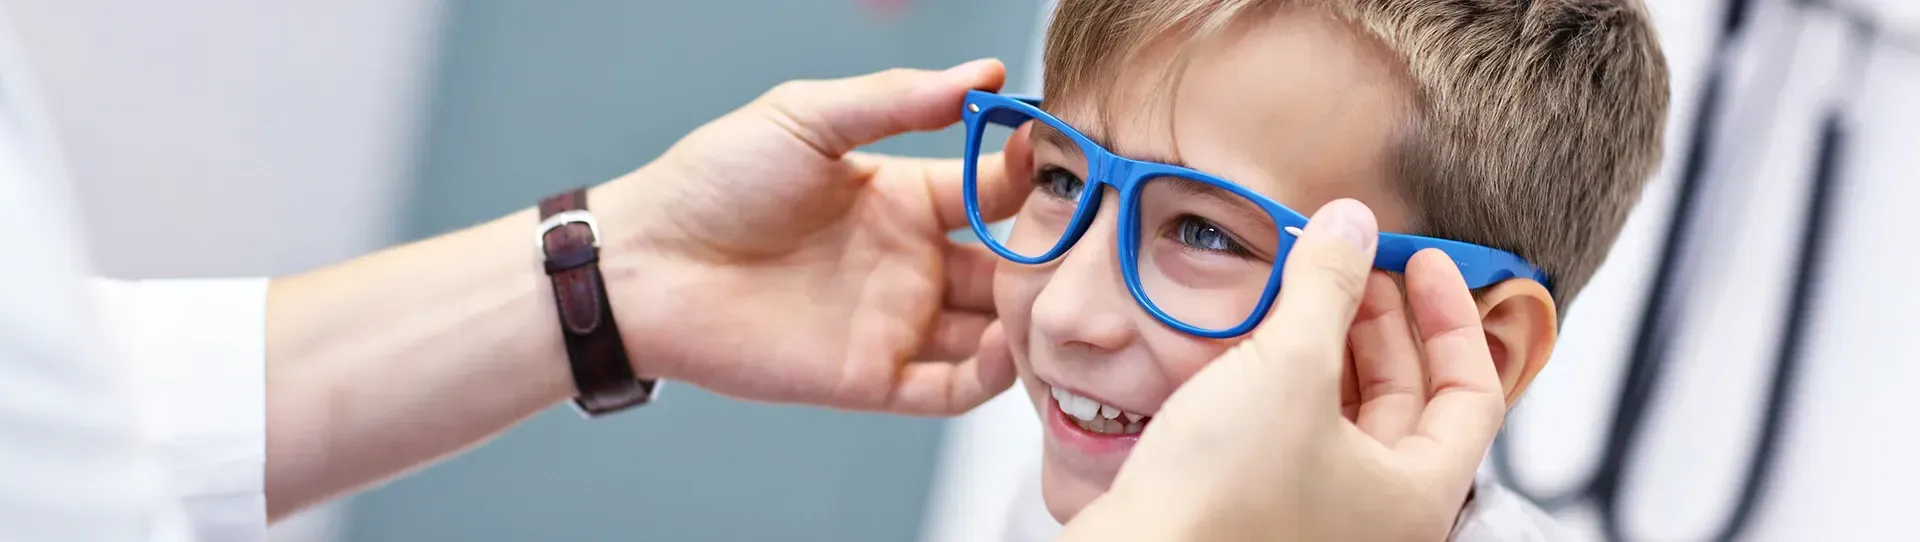 Kid with Eyeglasses